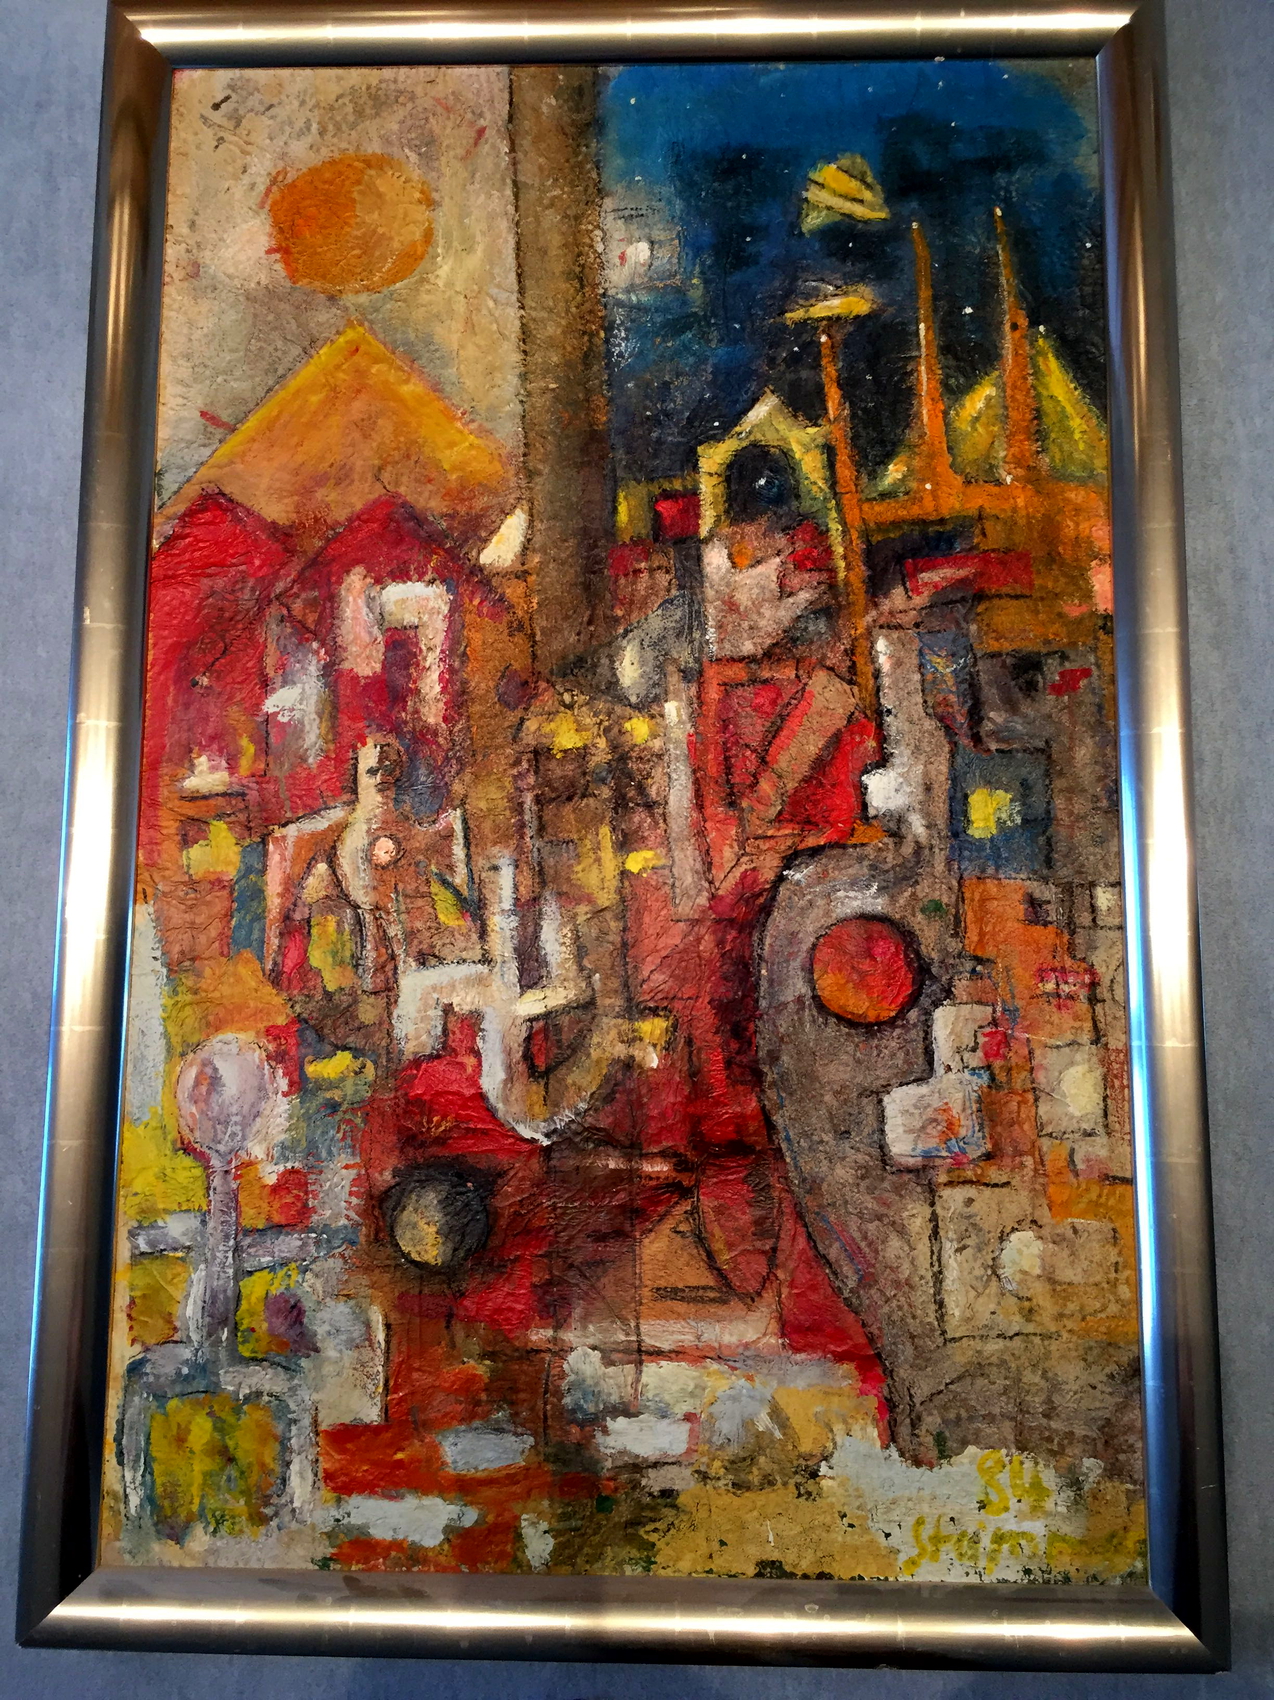 Tenochtitlan 150 x 100 cm 2000 sold | Reinhard Stammer | reinhard-stammer.com